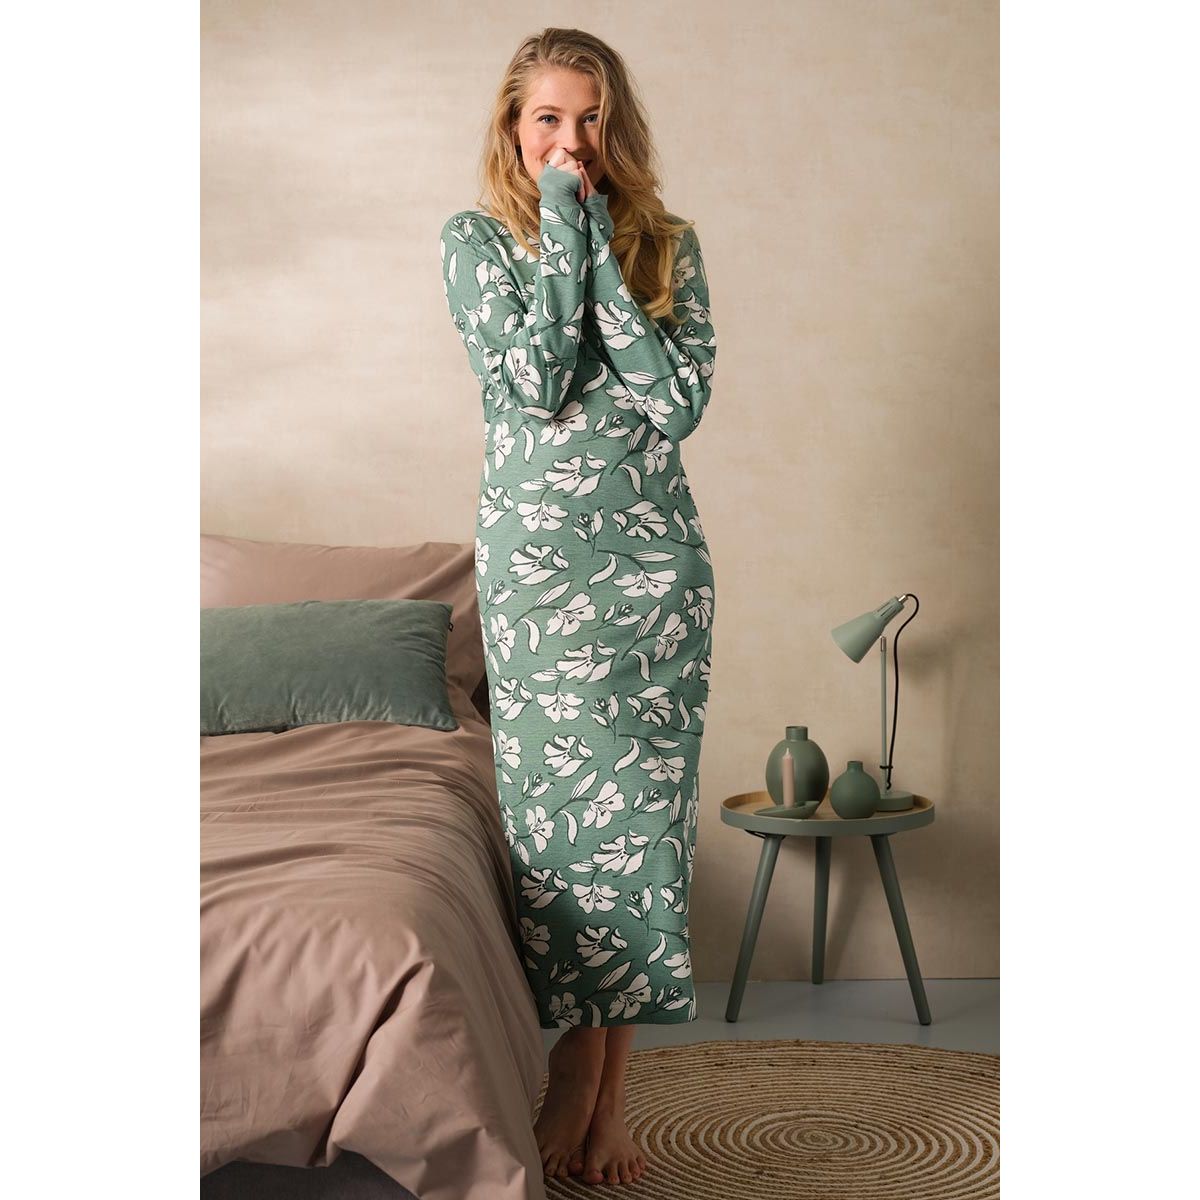 Lang bloemen | Gratis verzending € 40,- en gratis retour | de mooiste pyjama's, nachthemden, ondermode en meer